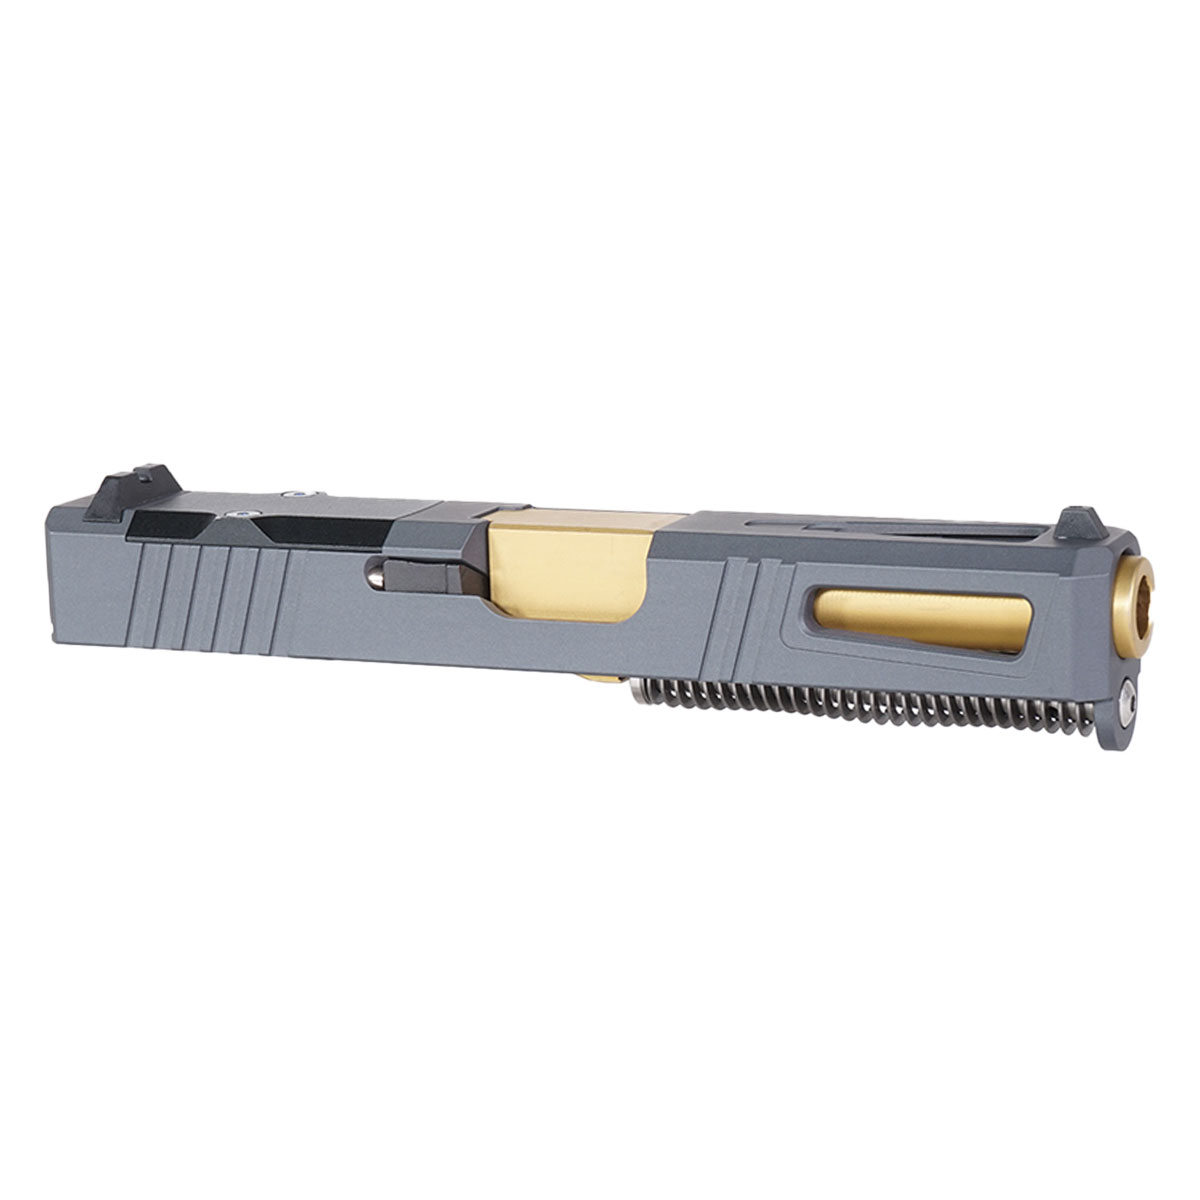 OTD 'Gold Strike' 9mm Complete Slide Kit - Glock 19 Gen 1-3 Compatible